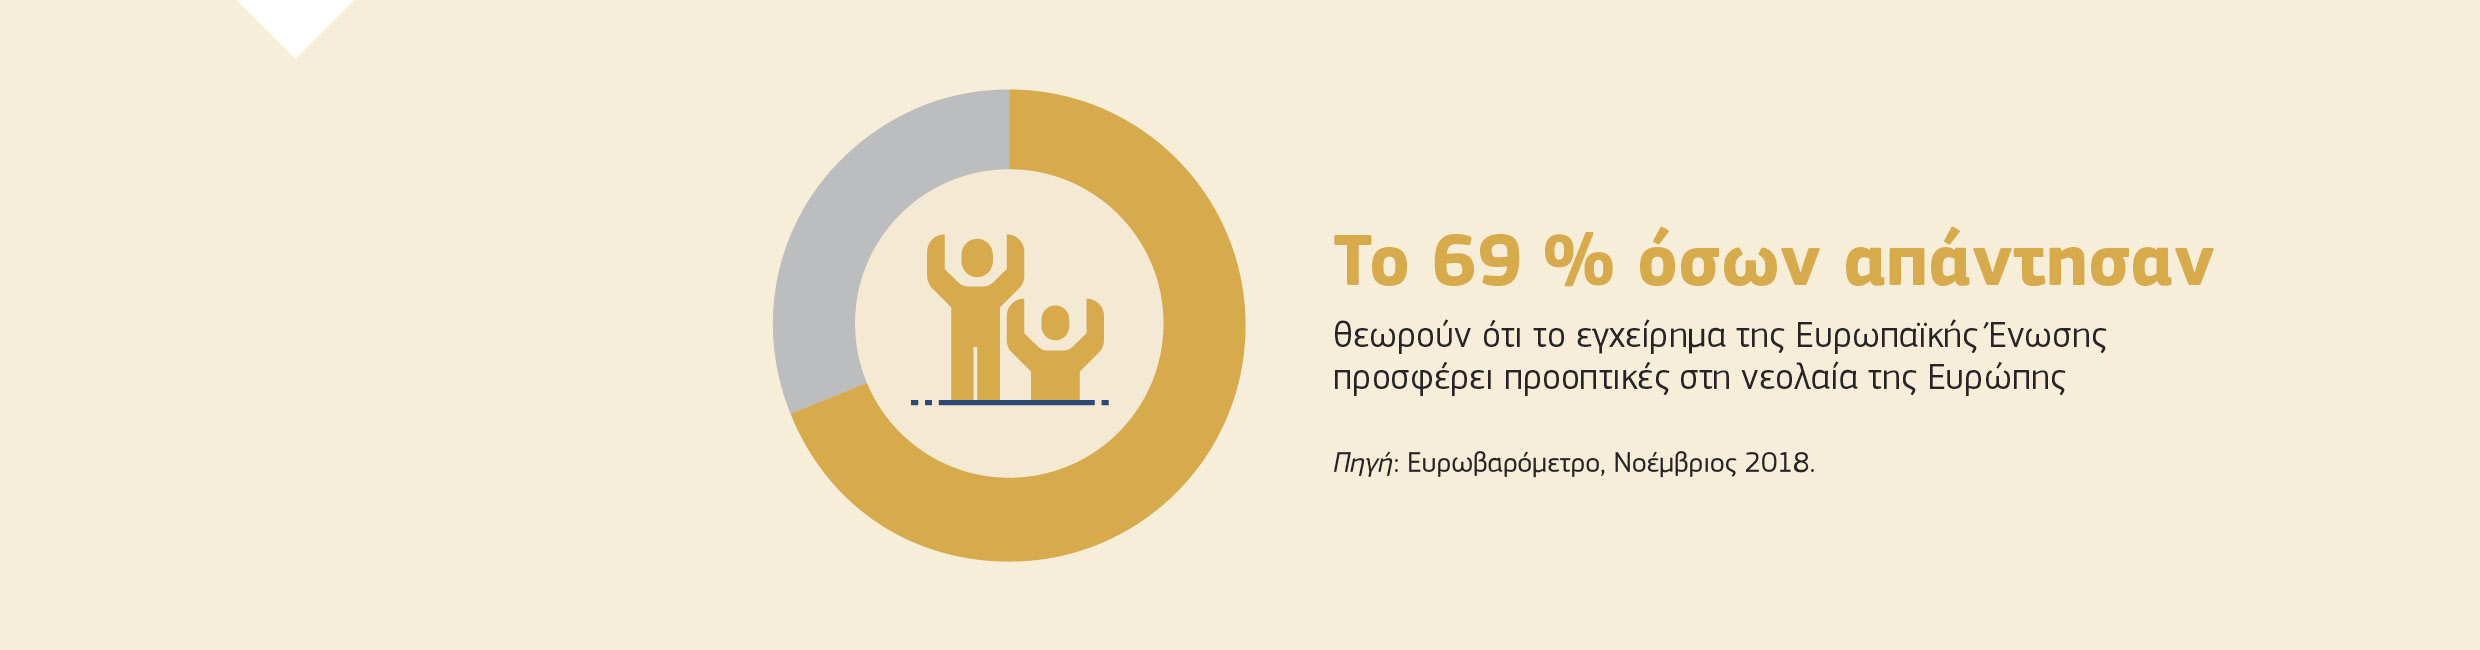 Το 69 % όσων απάντησαν θεωρούν ότι το εγχείρημα της Ευρωπαϊκής Ένωσης προσφέρει προοπτικές στη νεολαία της Ευρώπης. Πηγή: Ευρωβαρόμετρο, Νοέμβριος 2018.